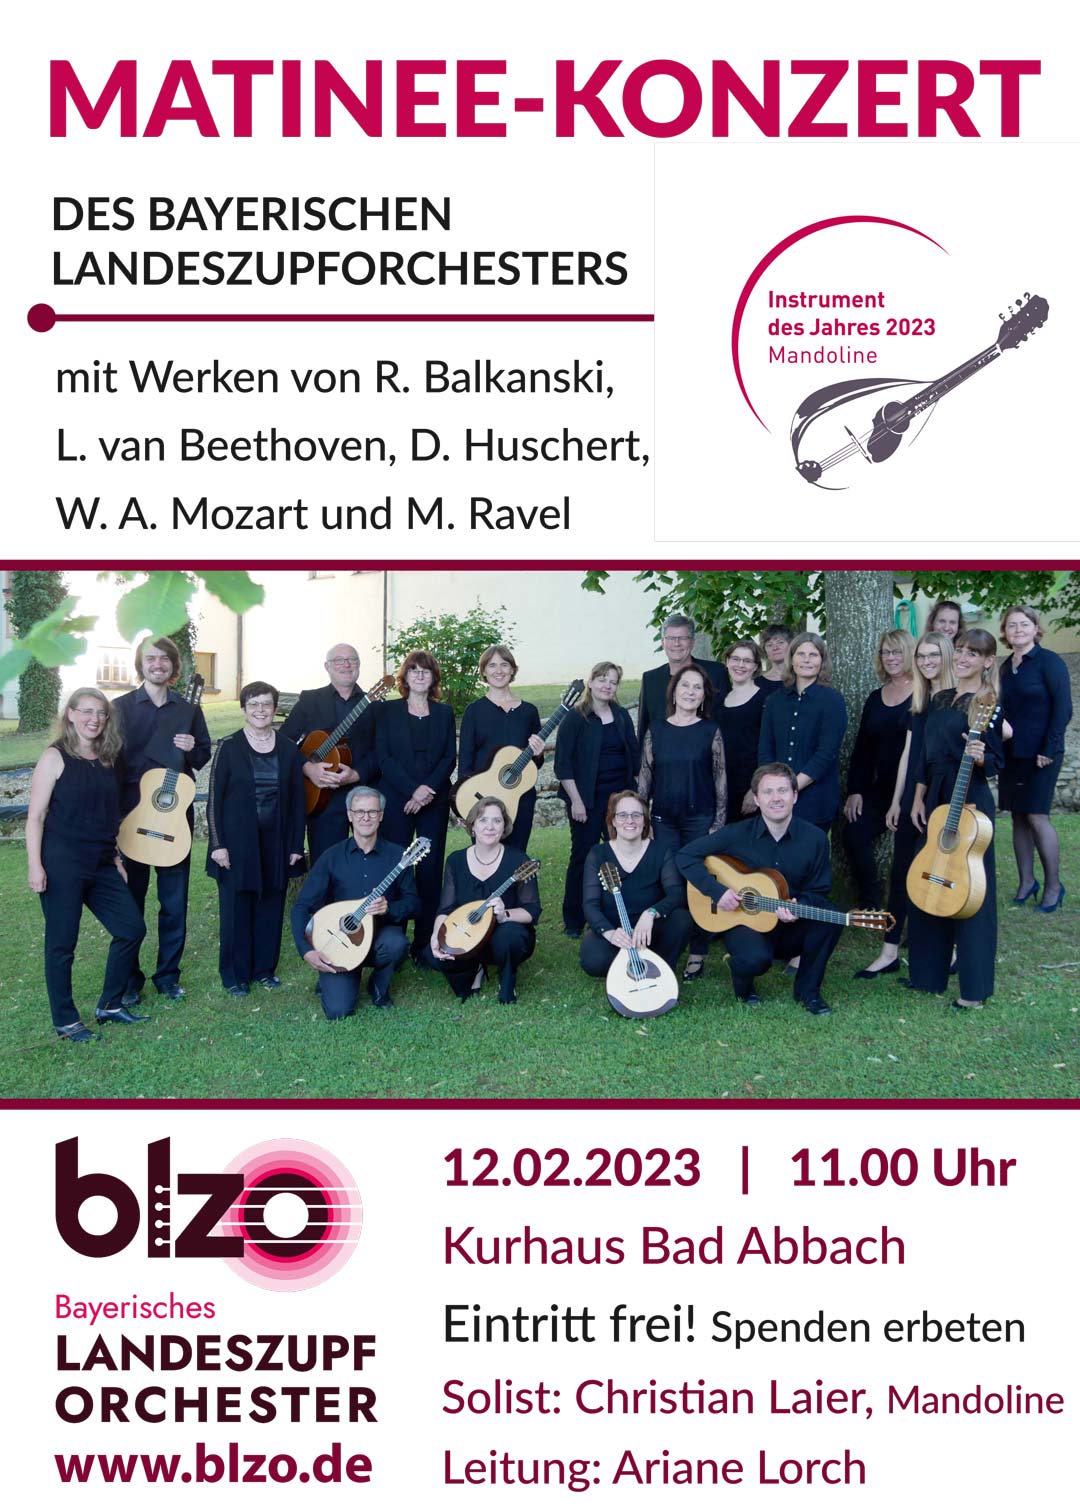 Plakat zum Matinee-Konzert des Bayerischen Landeszupforchesters (Foto/Grafik: Bayerisches Landeszupforchester/Marktgemeinde Bad Abbach)